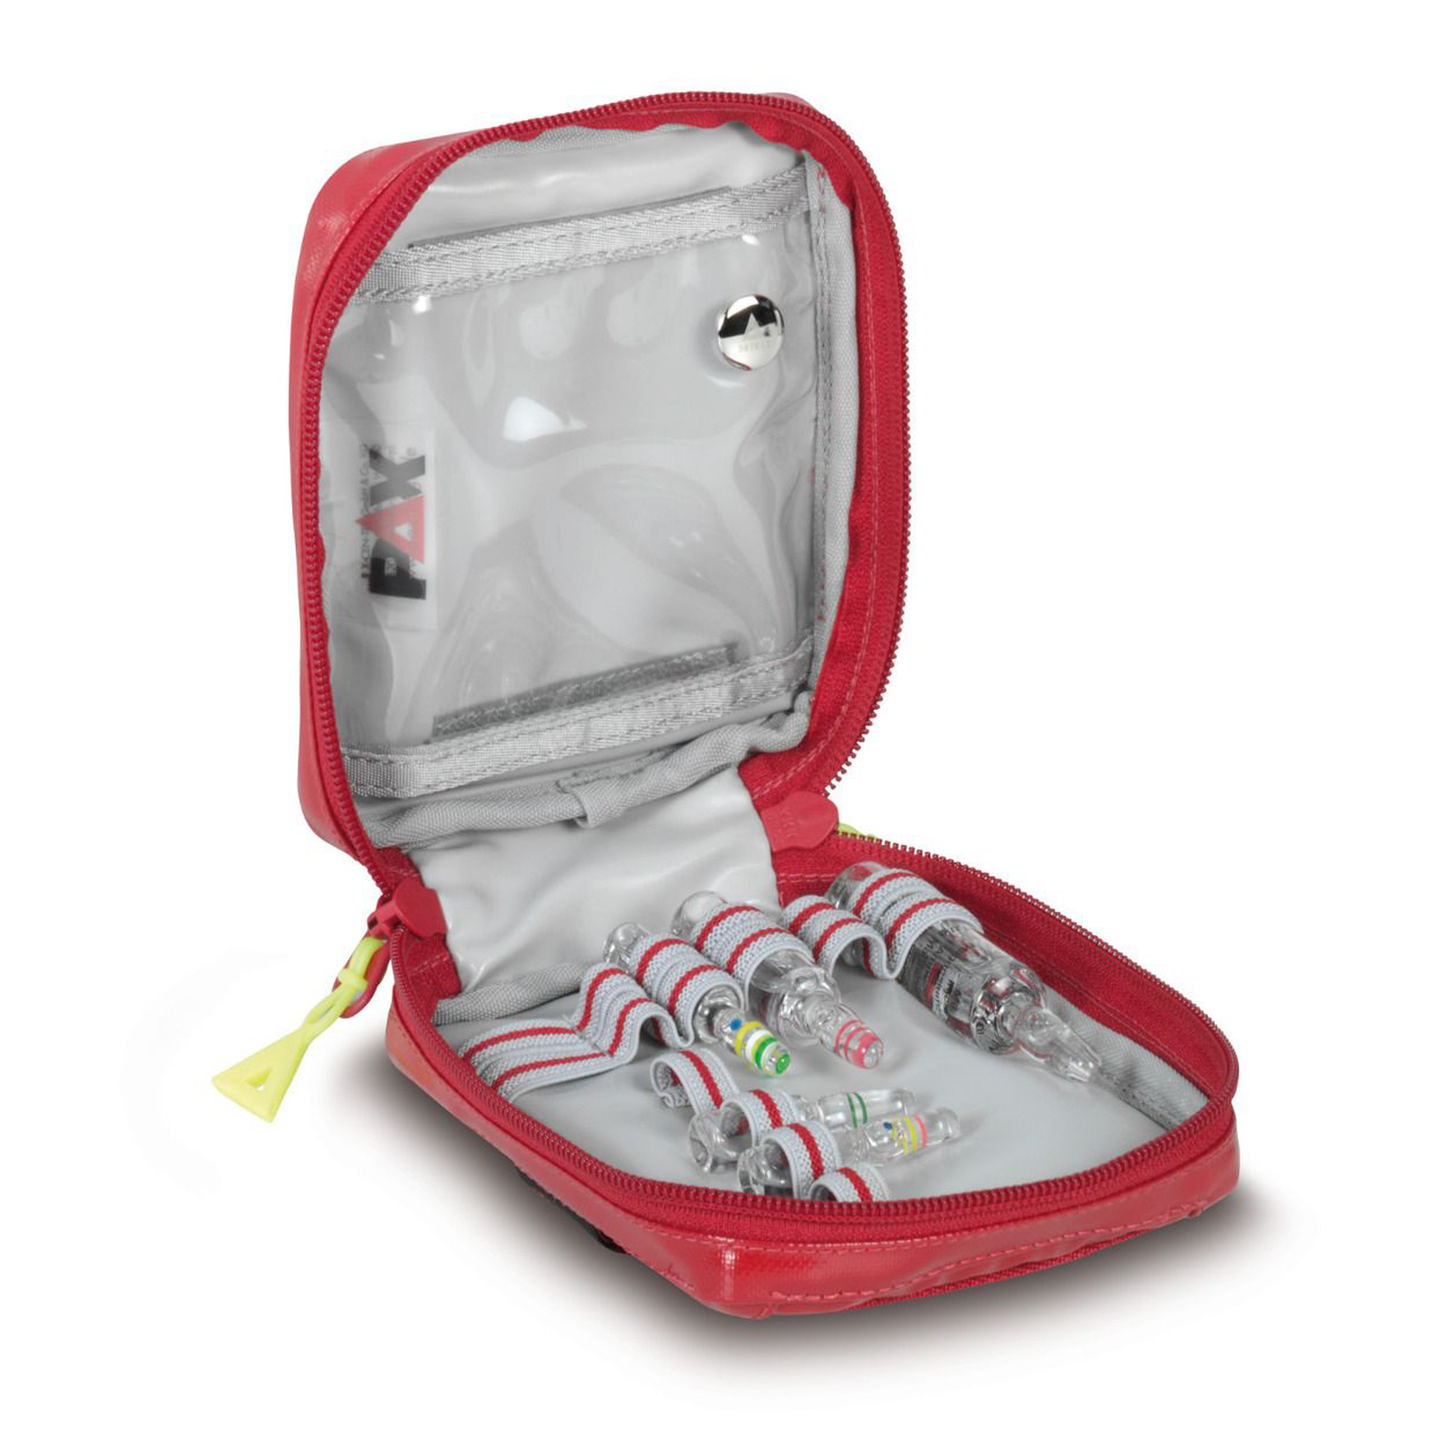 PAX Pro Series Ampoule Case (Narcotic Substances 9) - Red